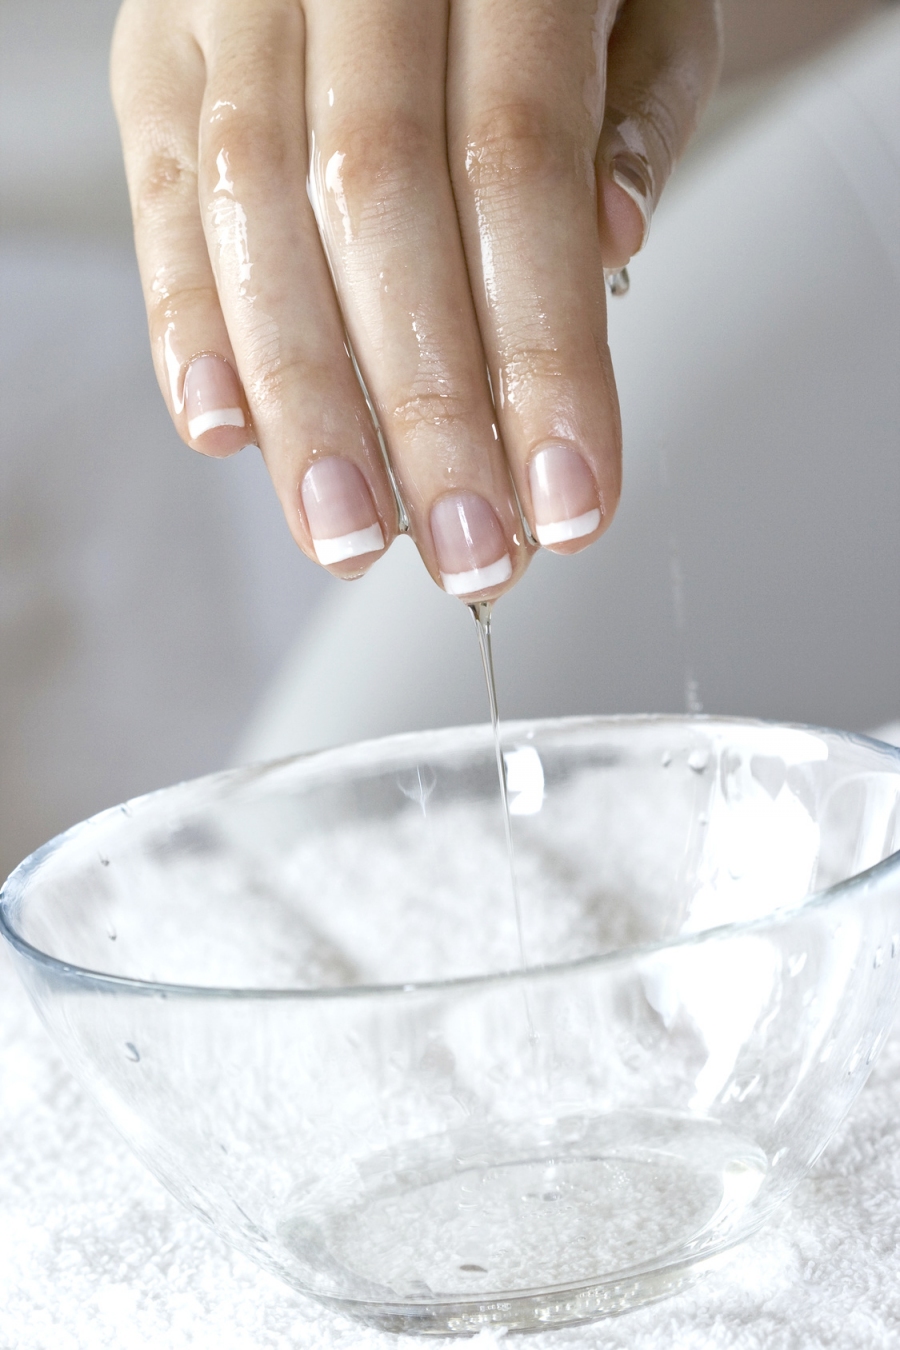 Milch-Olivenöl Handbad gegen raue Hände.